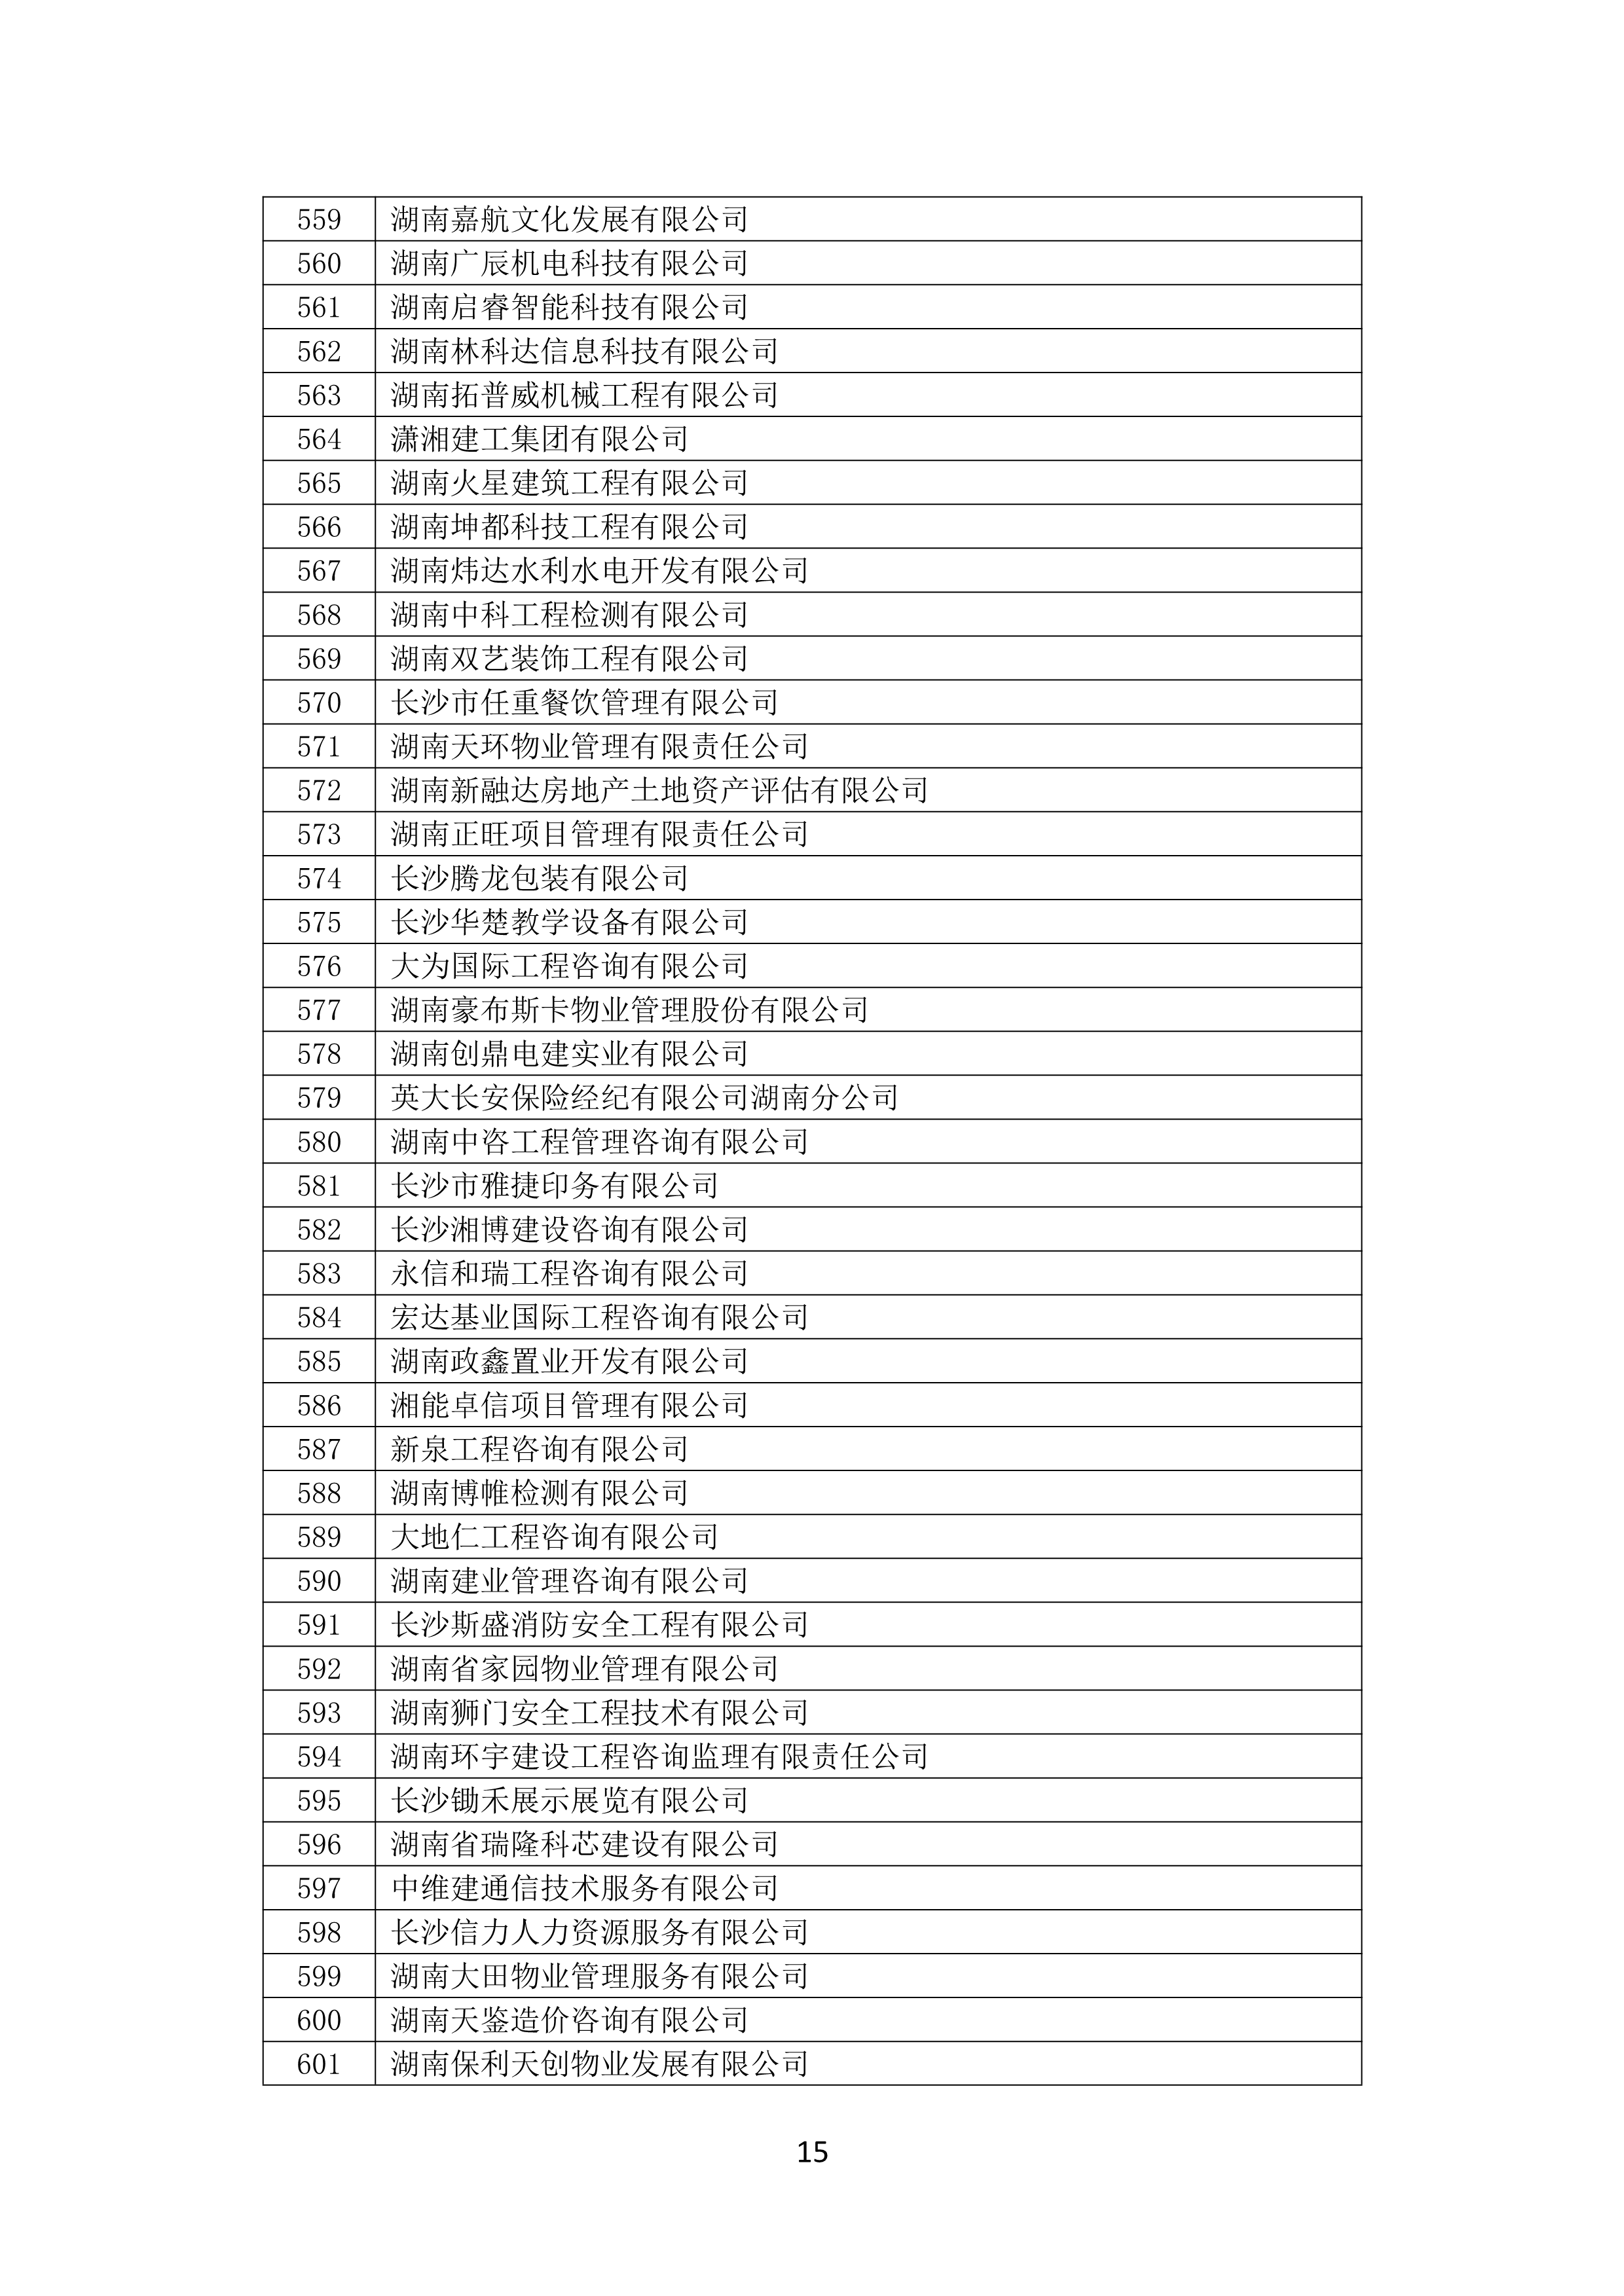 2021 年(nián)度湖南省守合同重信用企業名單_16.png